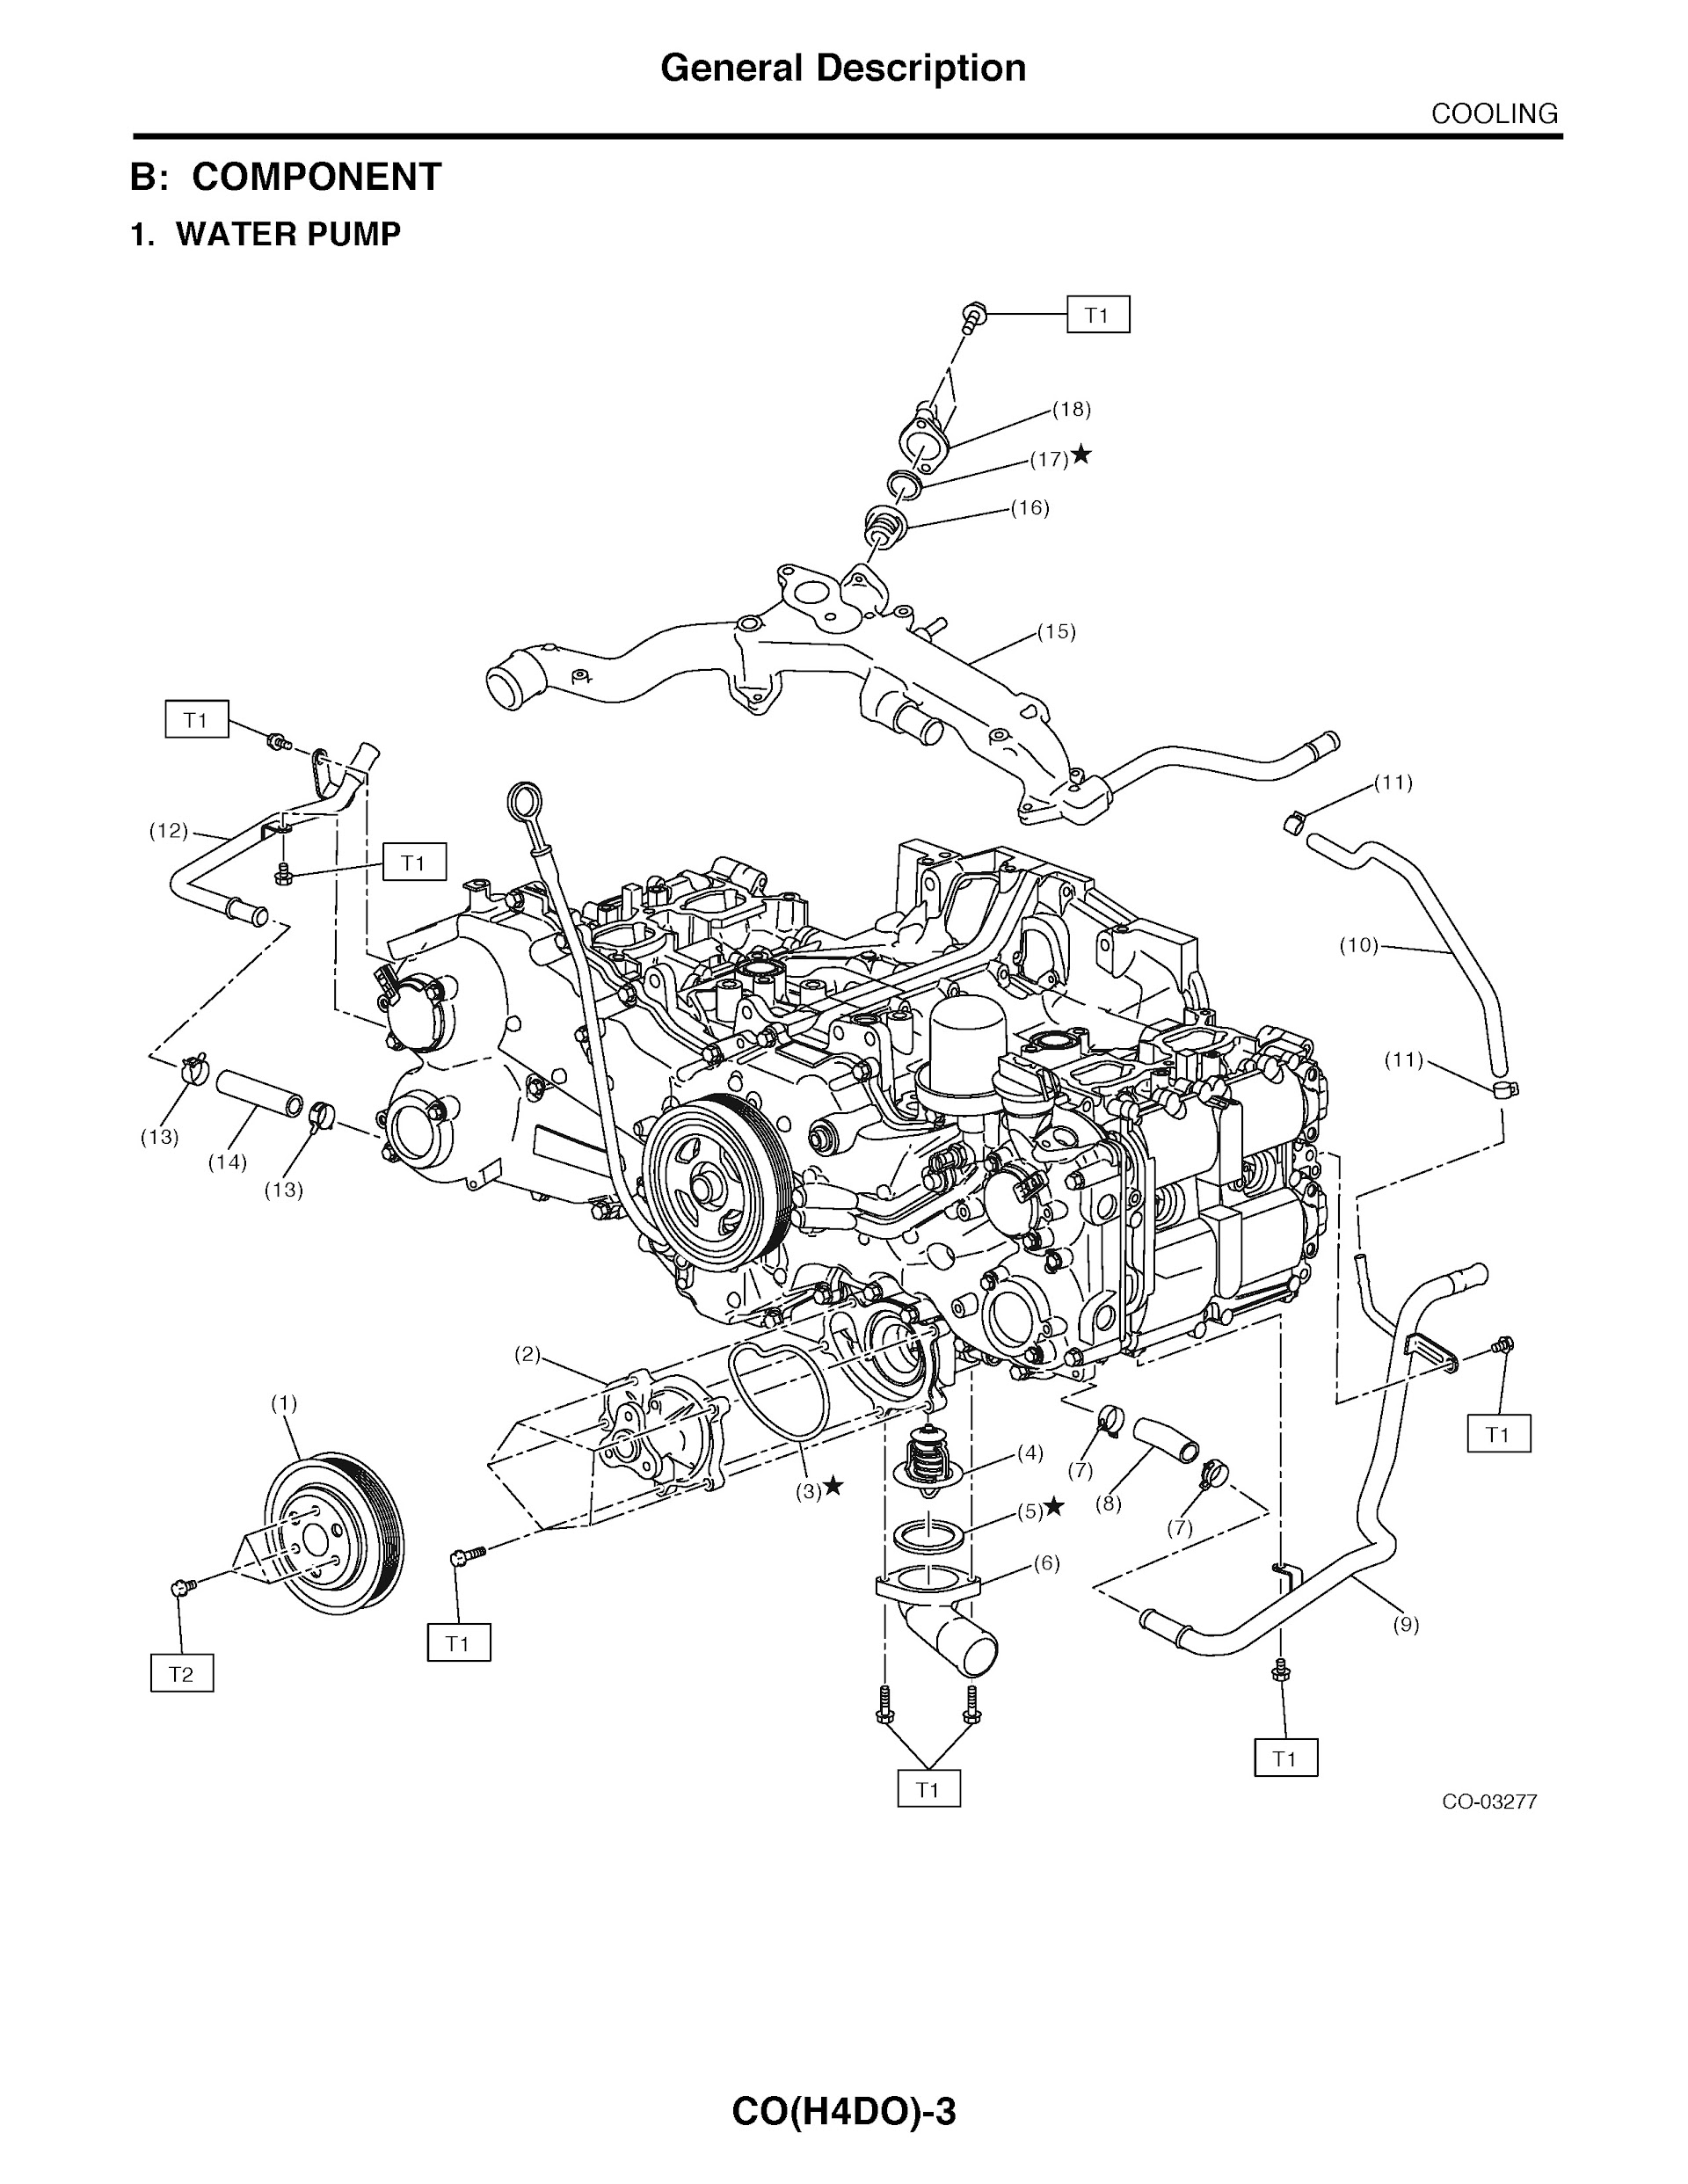 2015 Subaru Forester Repair Manual, Water Pump